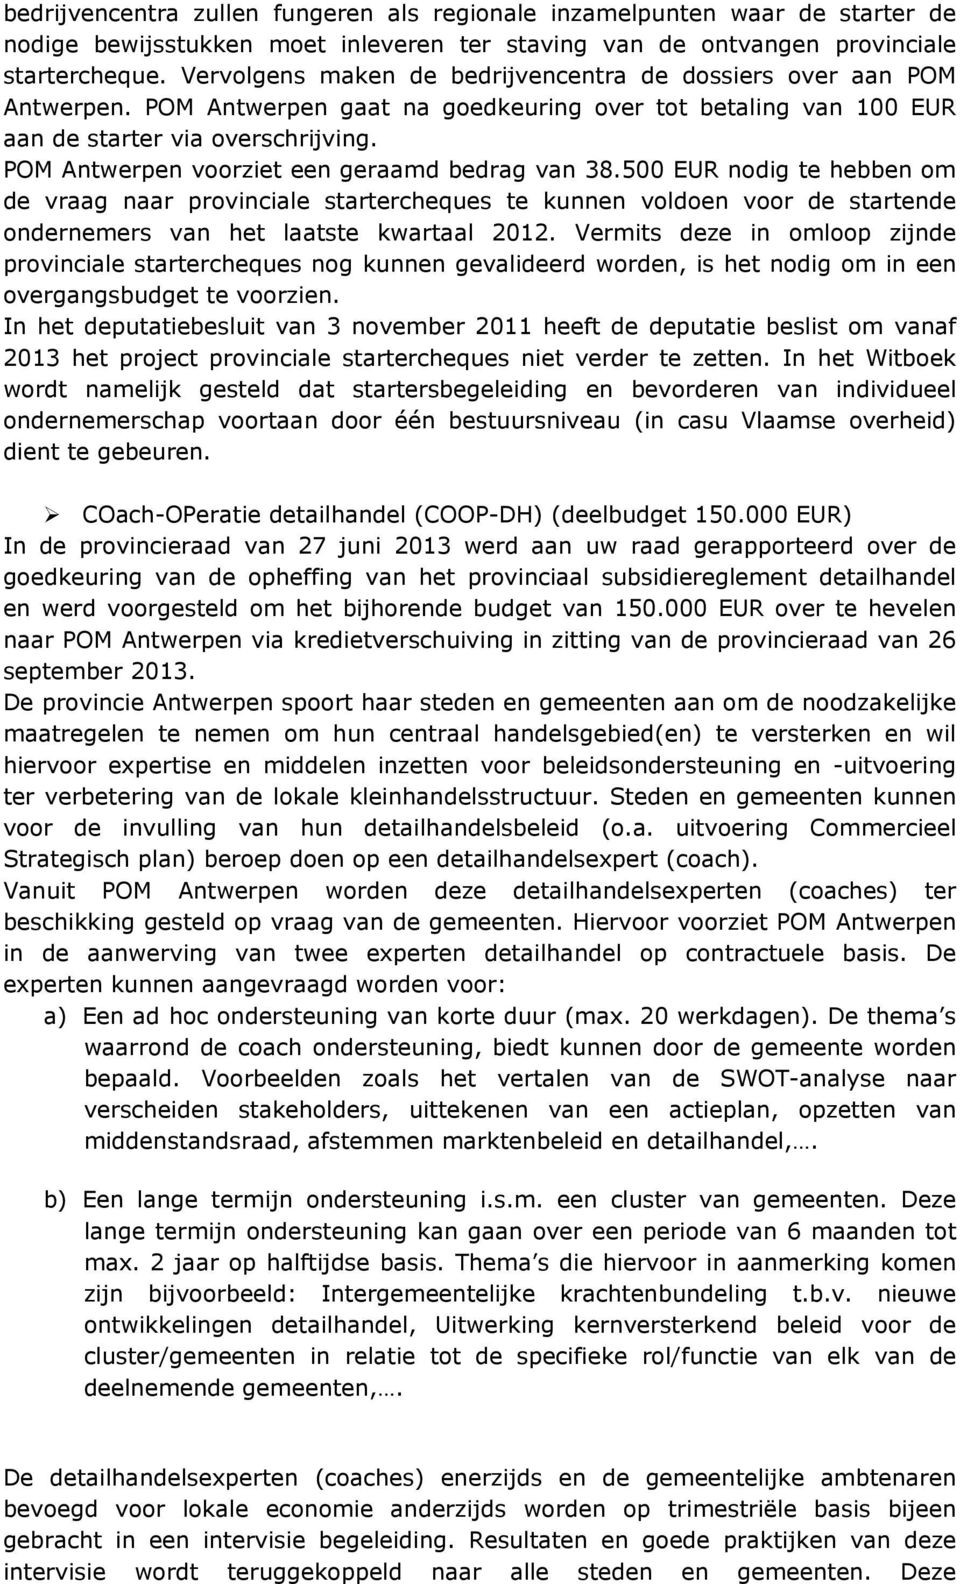 POM Antwerpen voorziet een geraamd bedrag van 38.500 EUR nodig te hebben om de vraag naar provinciale startercheques te kunnen voldoen voor de startende ondernemers van het laatste kwartaal 2012.